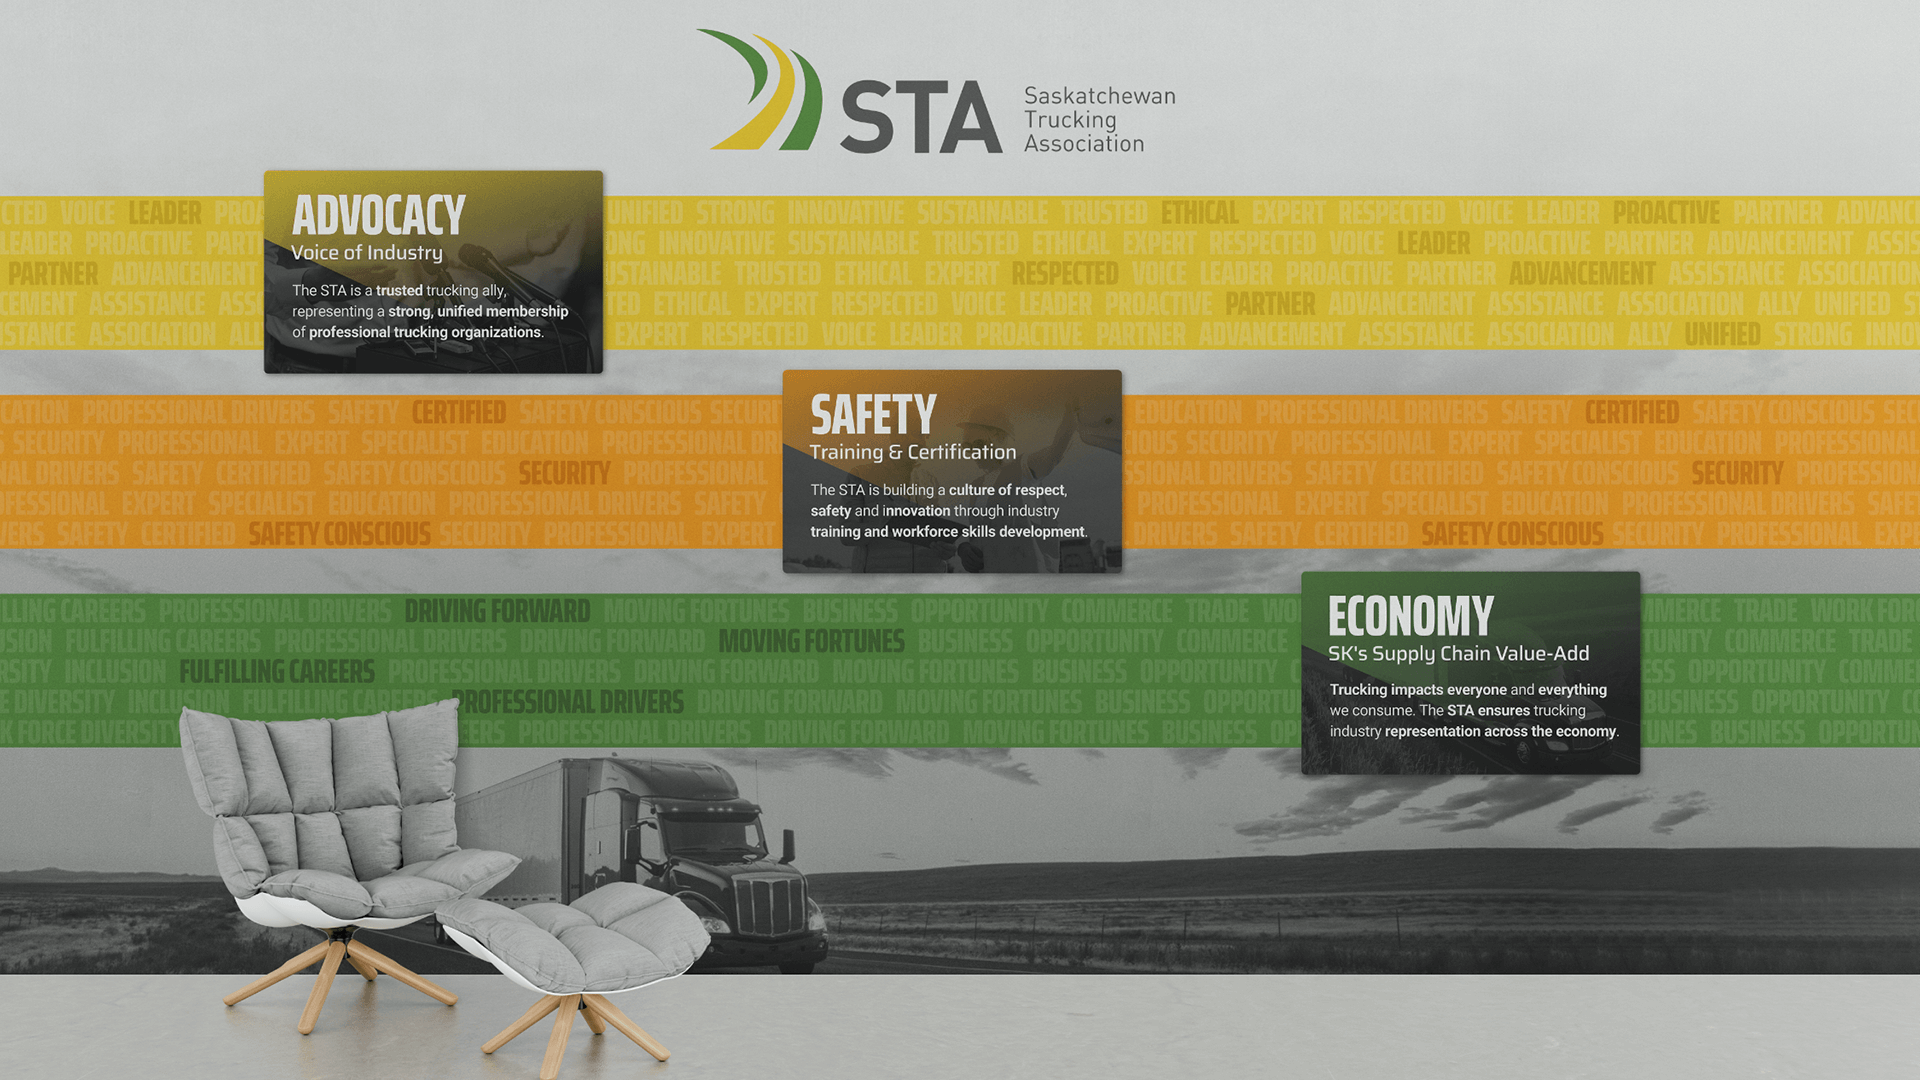 Saskatchewan Trucking Association, Design, STA Mission Feature Wall, Portfolio Image